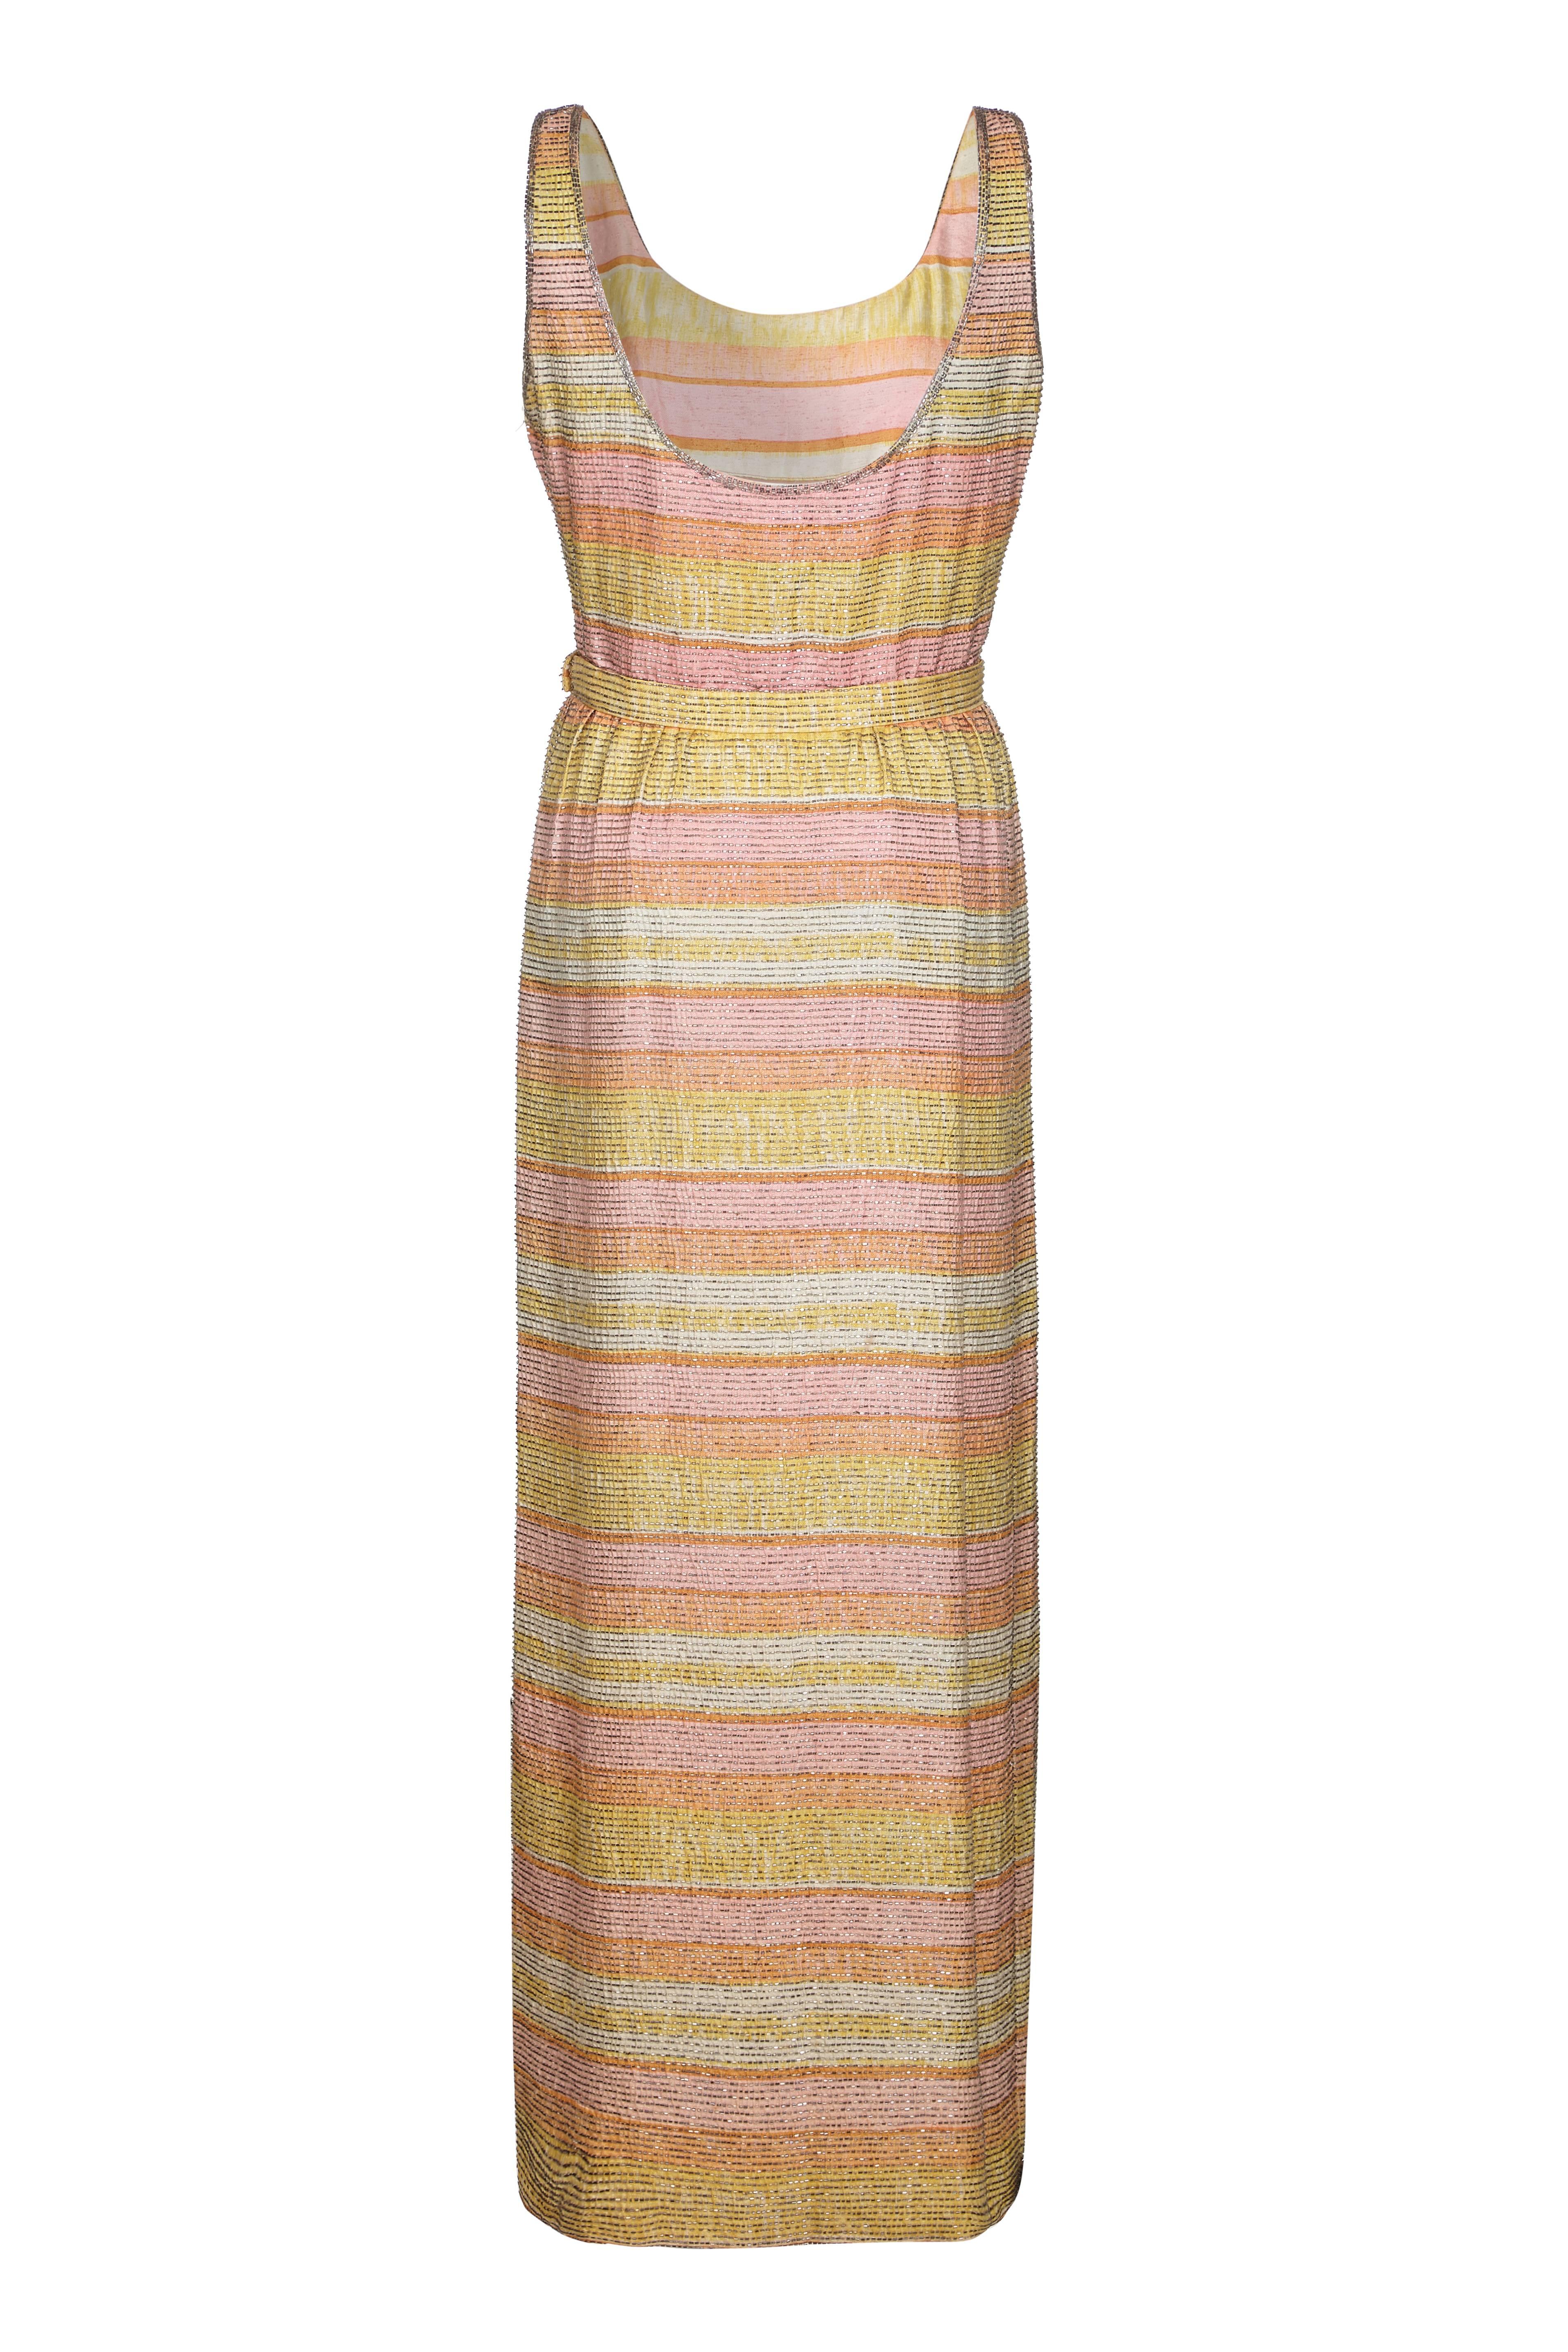 Unglaublich Vintage 1960er Mollie Parnis Seidenkleid in hübschen pastellfarbenen Streifen mit all over Perlen.  Es ist bodenlang, hat einen Schlitz an einer Seite des Rocks, einen Gürtel in der Taille und einen seitlichen Reißverschluss. Ein